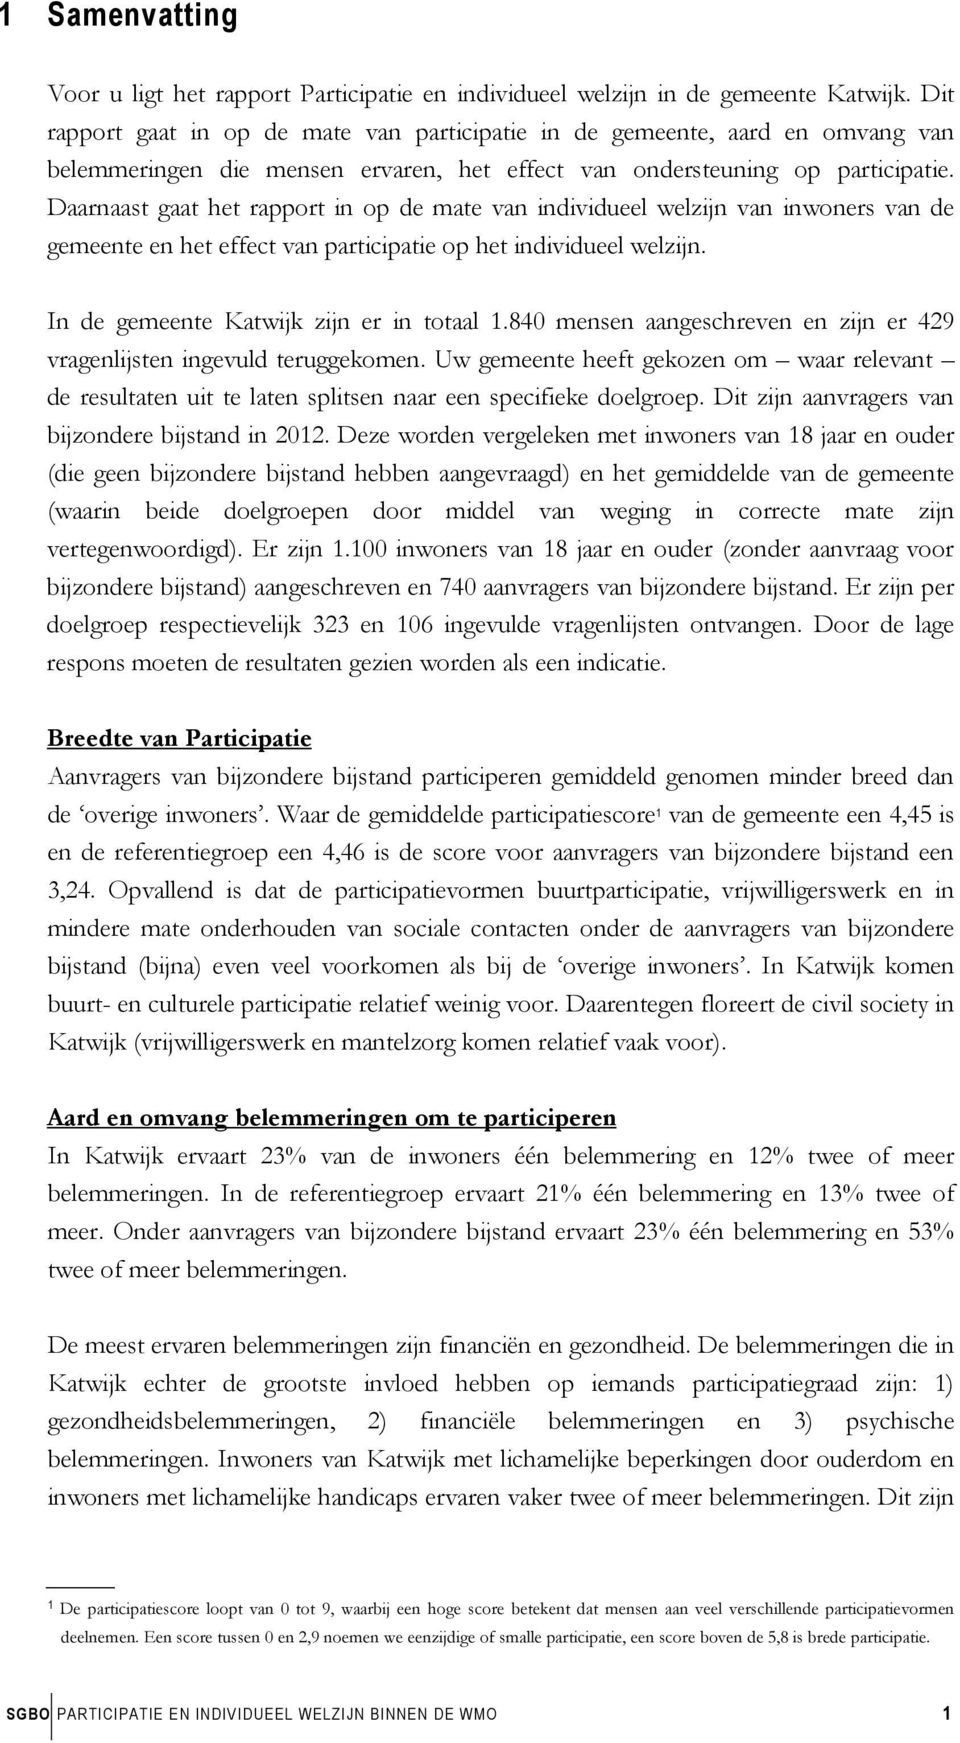 Daarnaast gaat het rapport in op de mate van individueel welzijn van inwoners van de gemeente en het effect van participatie op het individueel welzijn. In de gemeente Katwijk zijn er in totaal 1.